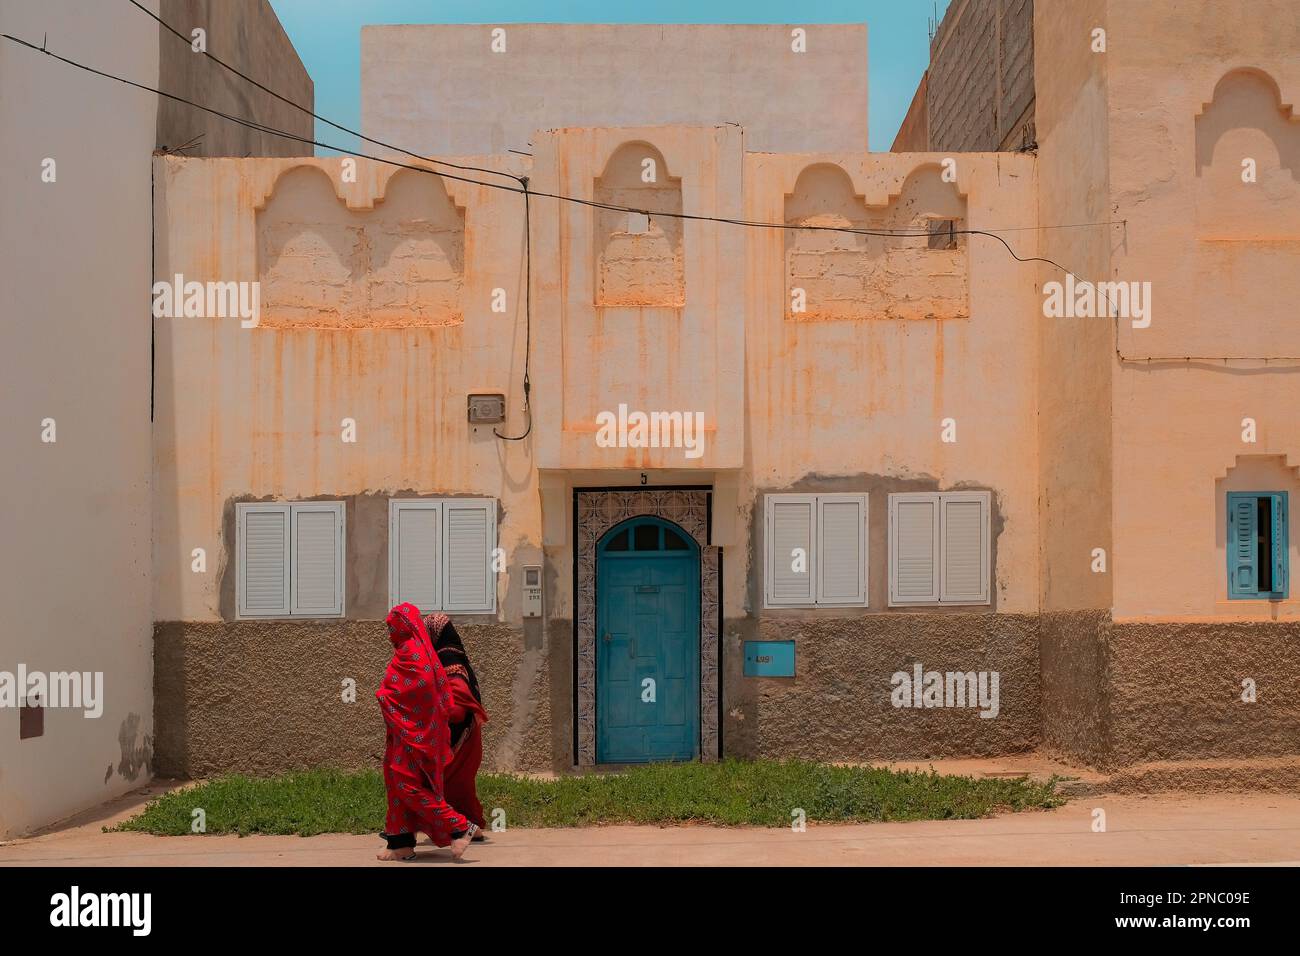 Deux musulmanes locales couvertes de rouge Abayas passent devant une vieille maison sur un trottoir à Sidi Ifni, au Maroc, pendant le ramadan. Vêtements religieux traditionnels. Banque D'Images